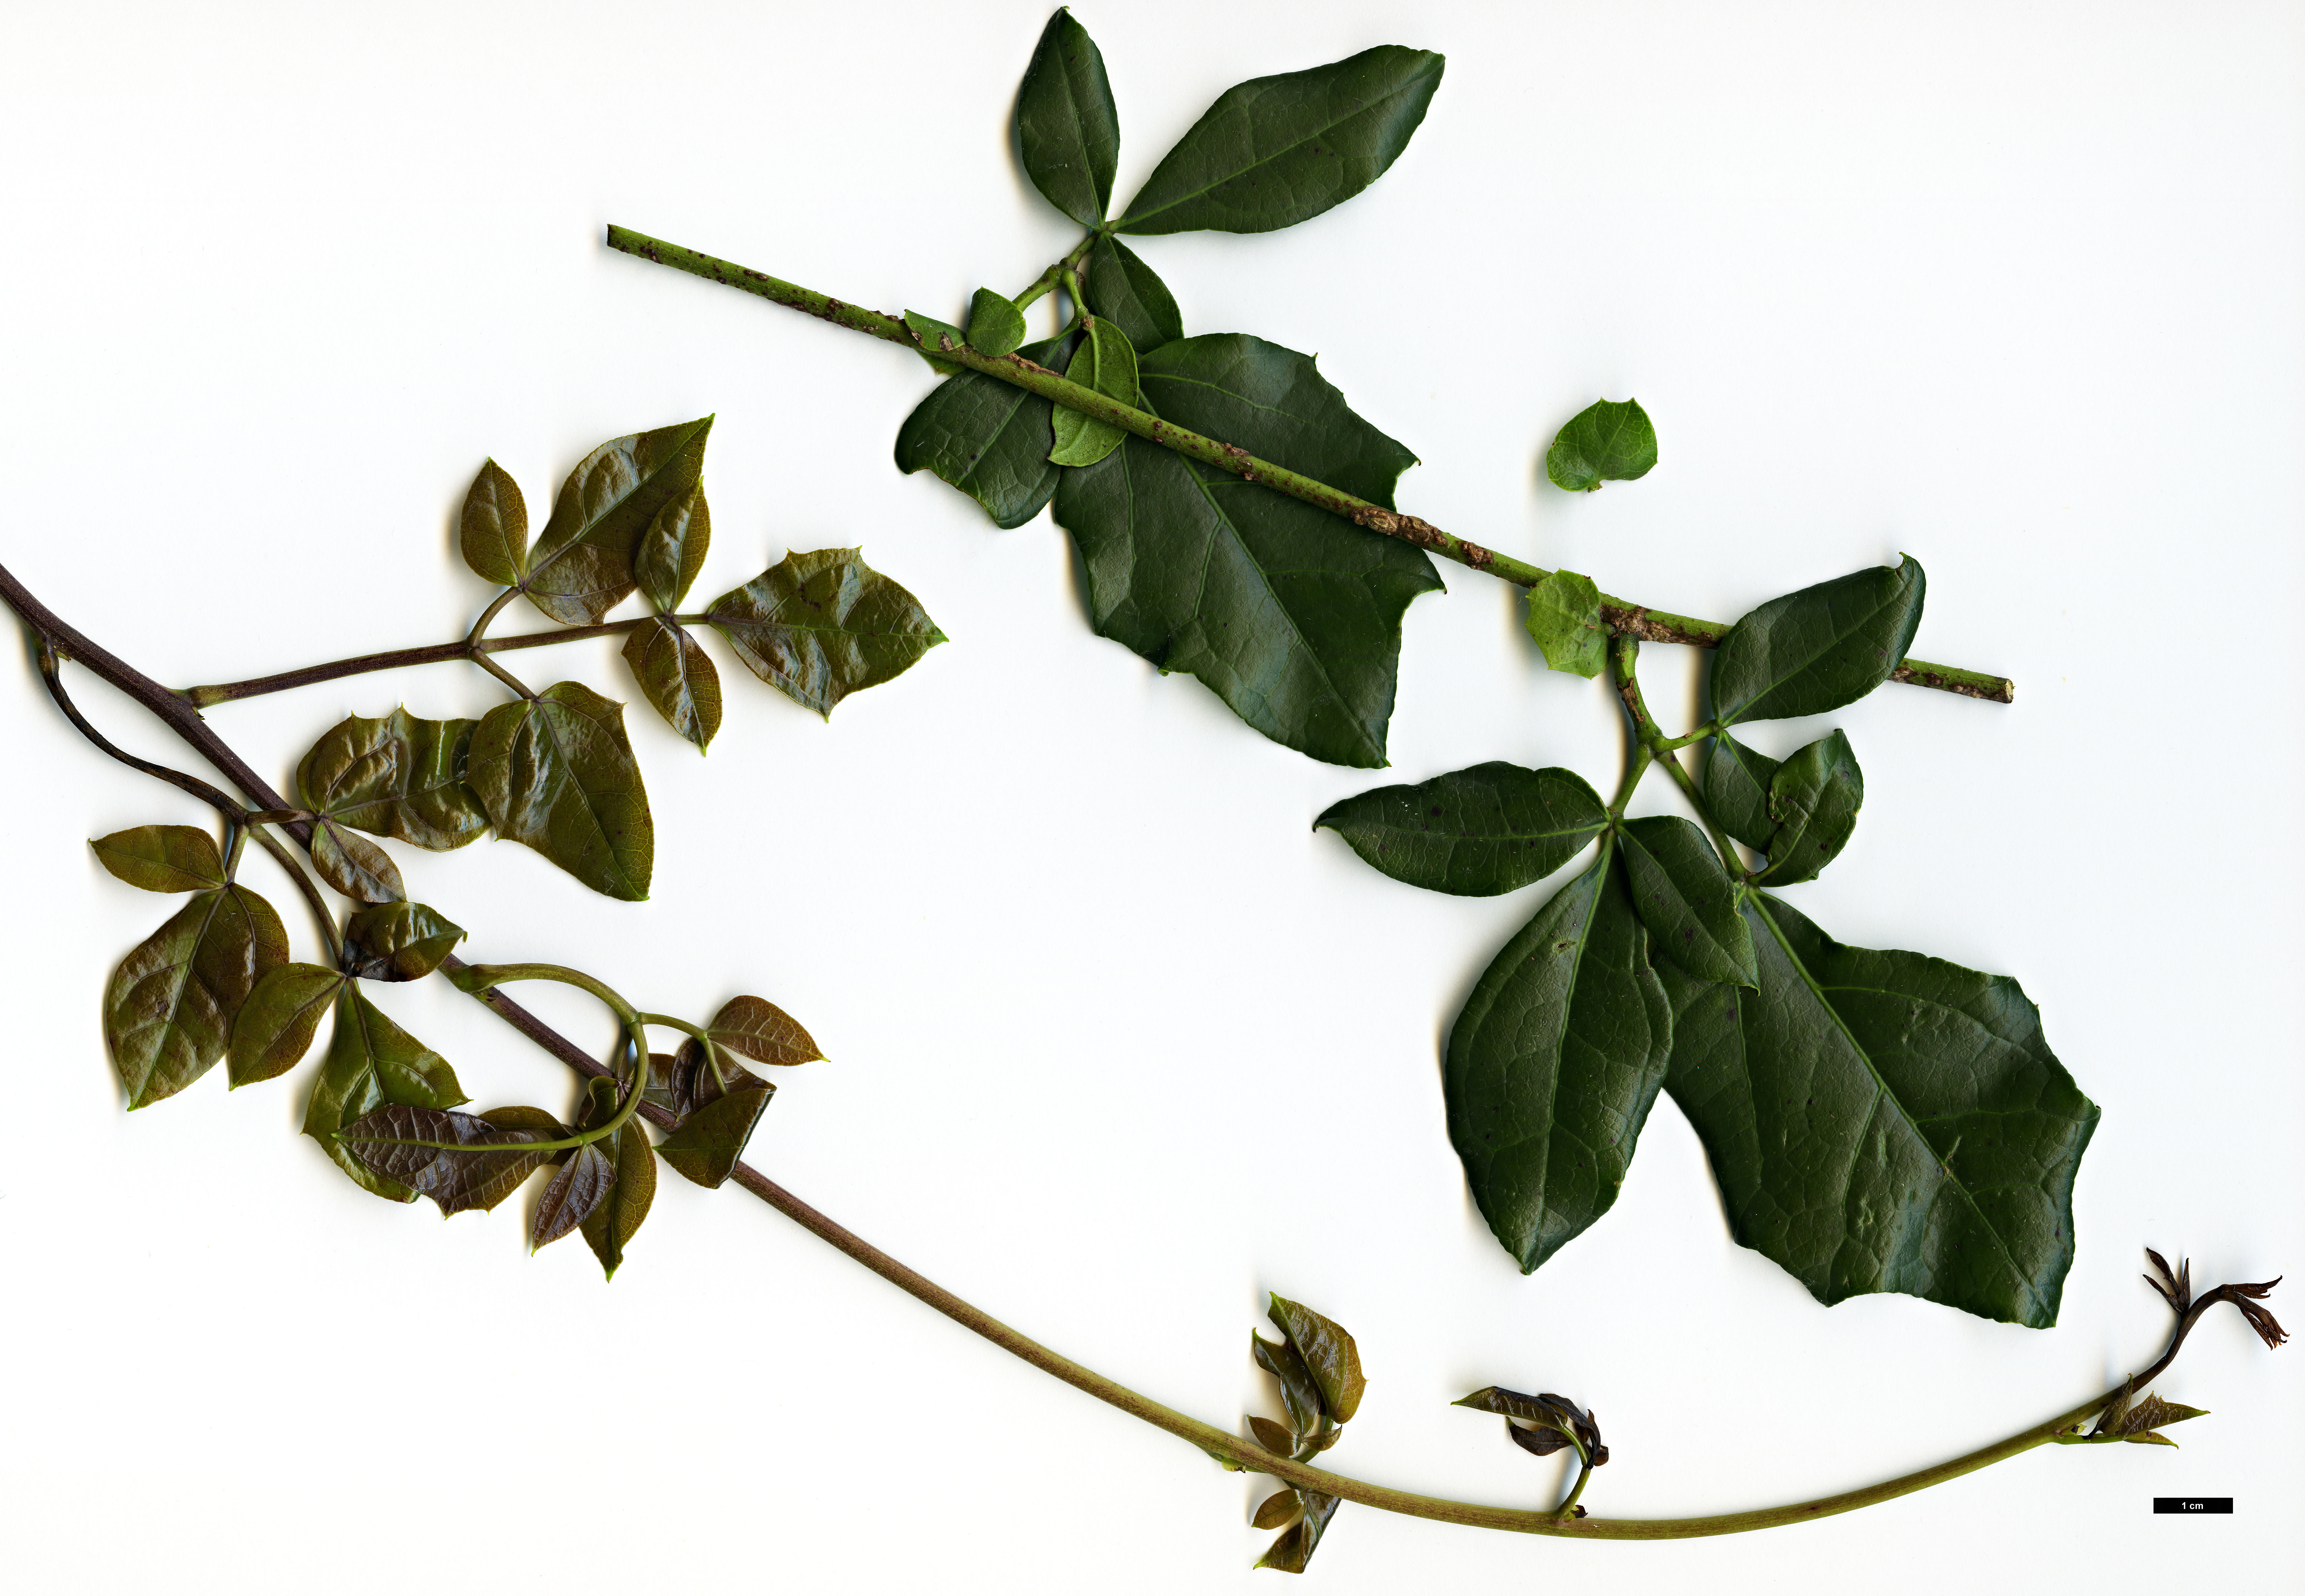 High resolution image: Family: Lardizabalaceae - Genus: Lardizabala - Taxon: funaria